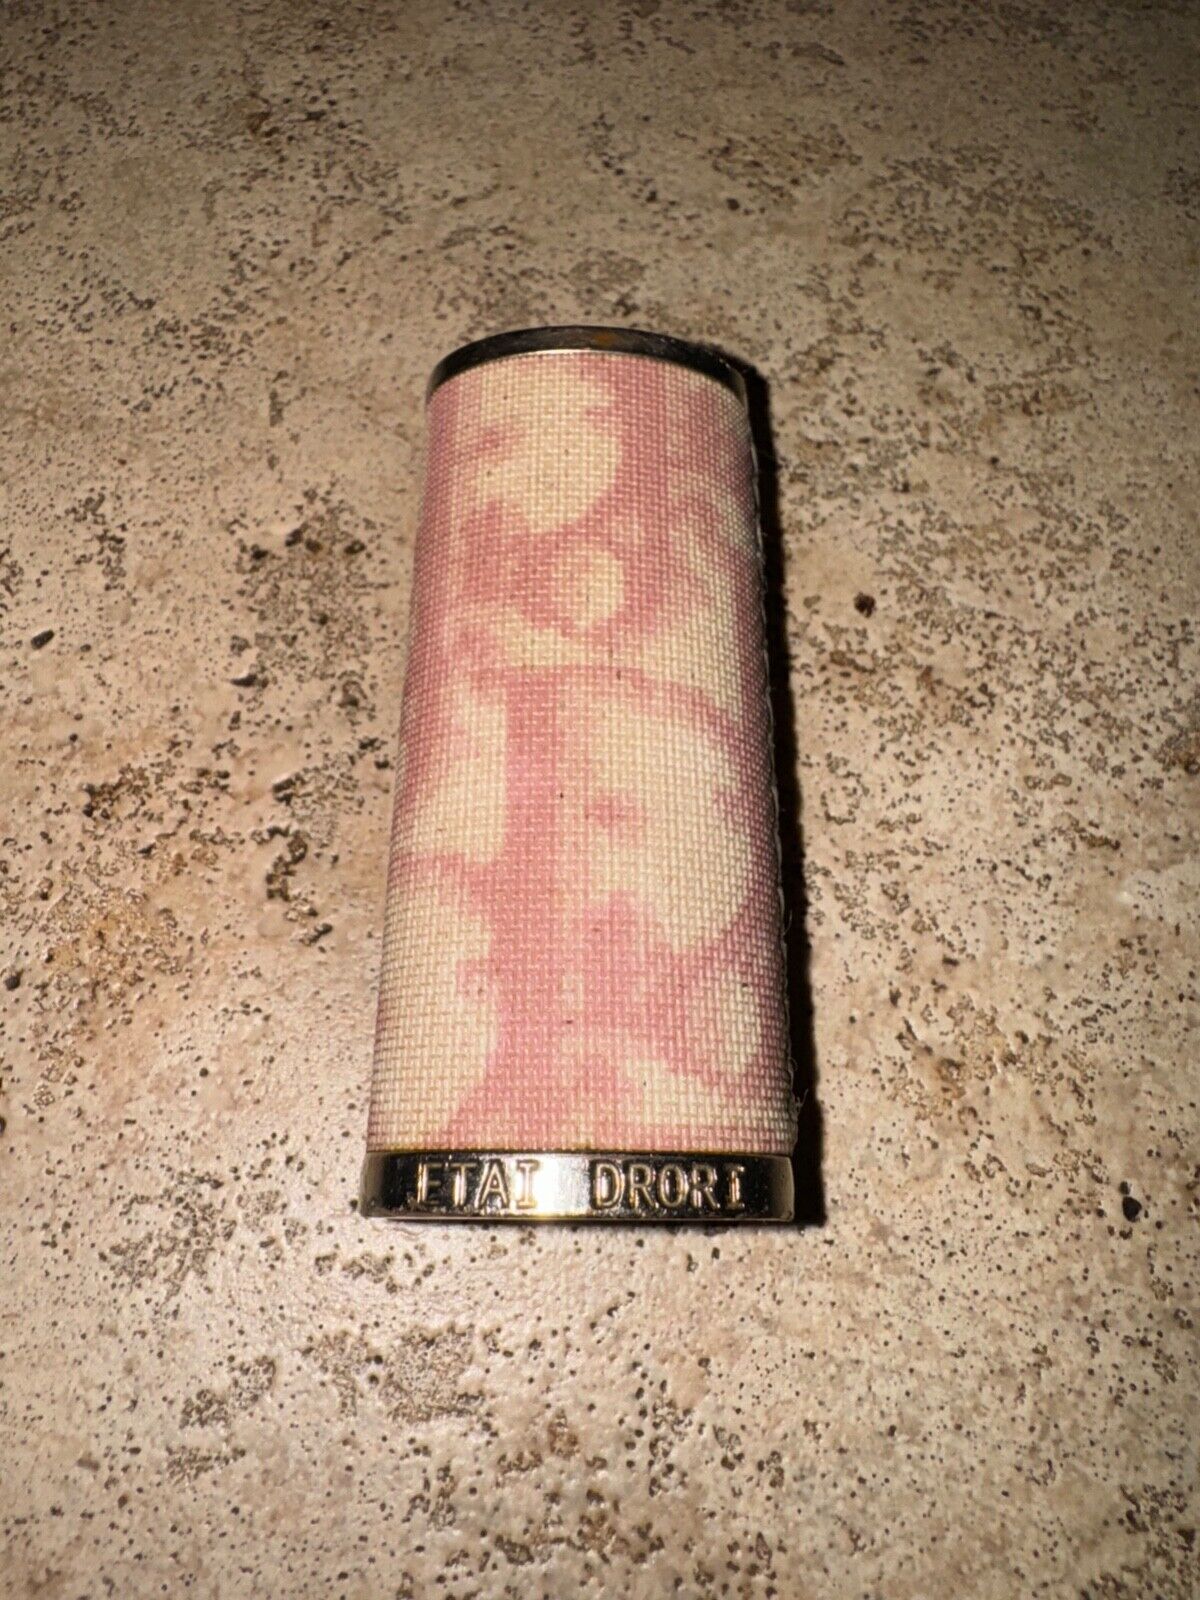 Authentic Etai Drori Dior lighter case